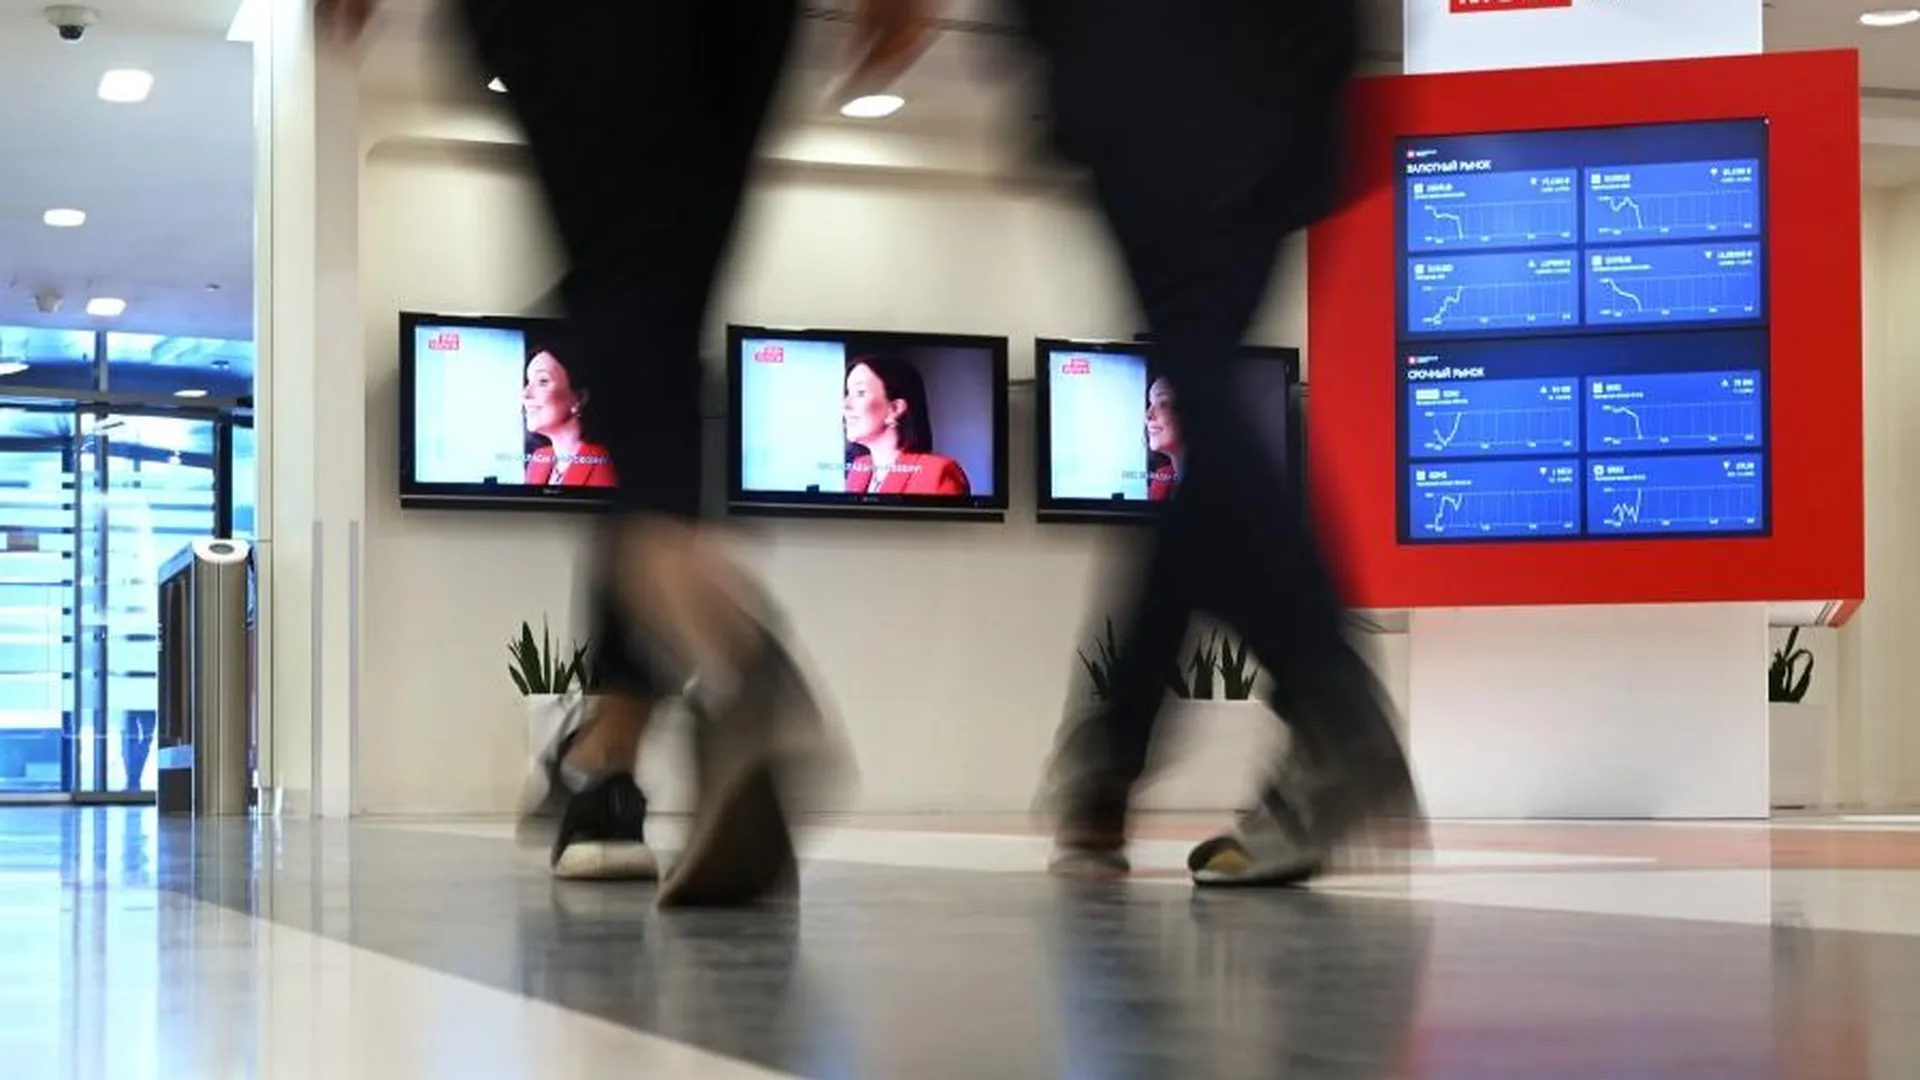 Мосбиржа с 5 апреля приостановит торги расписками ретейлера X5 Retail Group